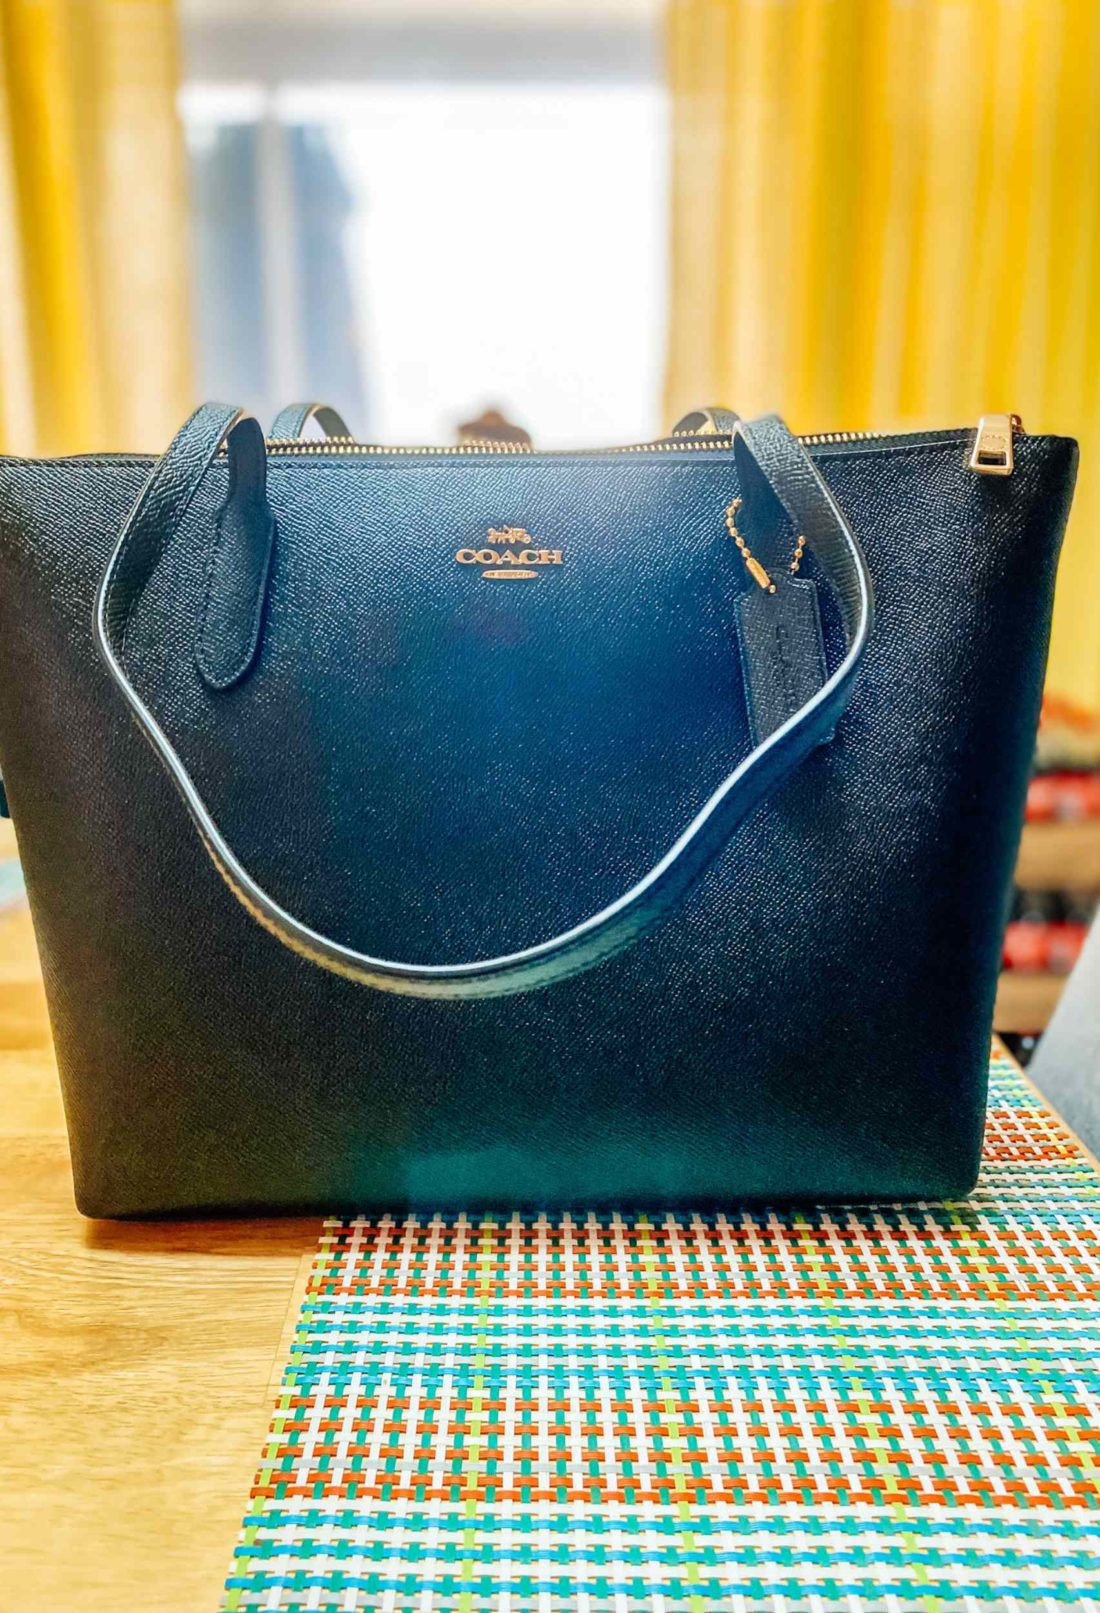 Coachtopia's New Wavy Dinky Handbags Are Party-Ready Purses